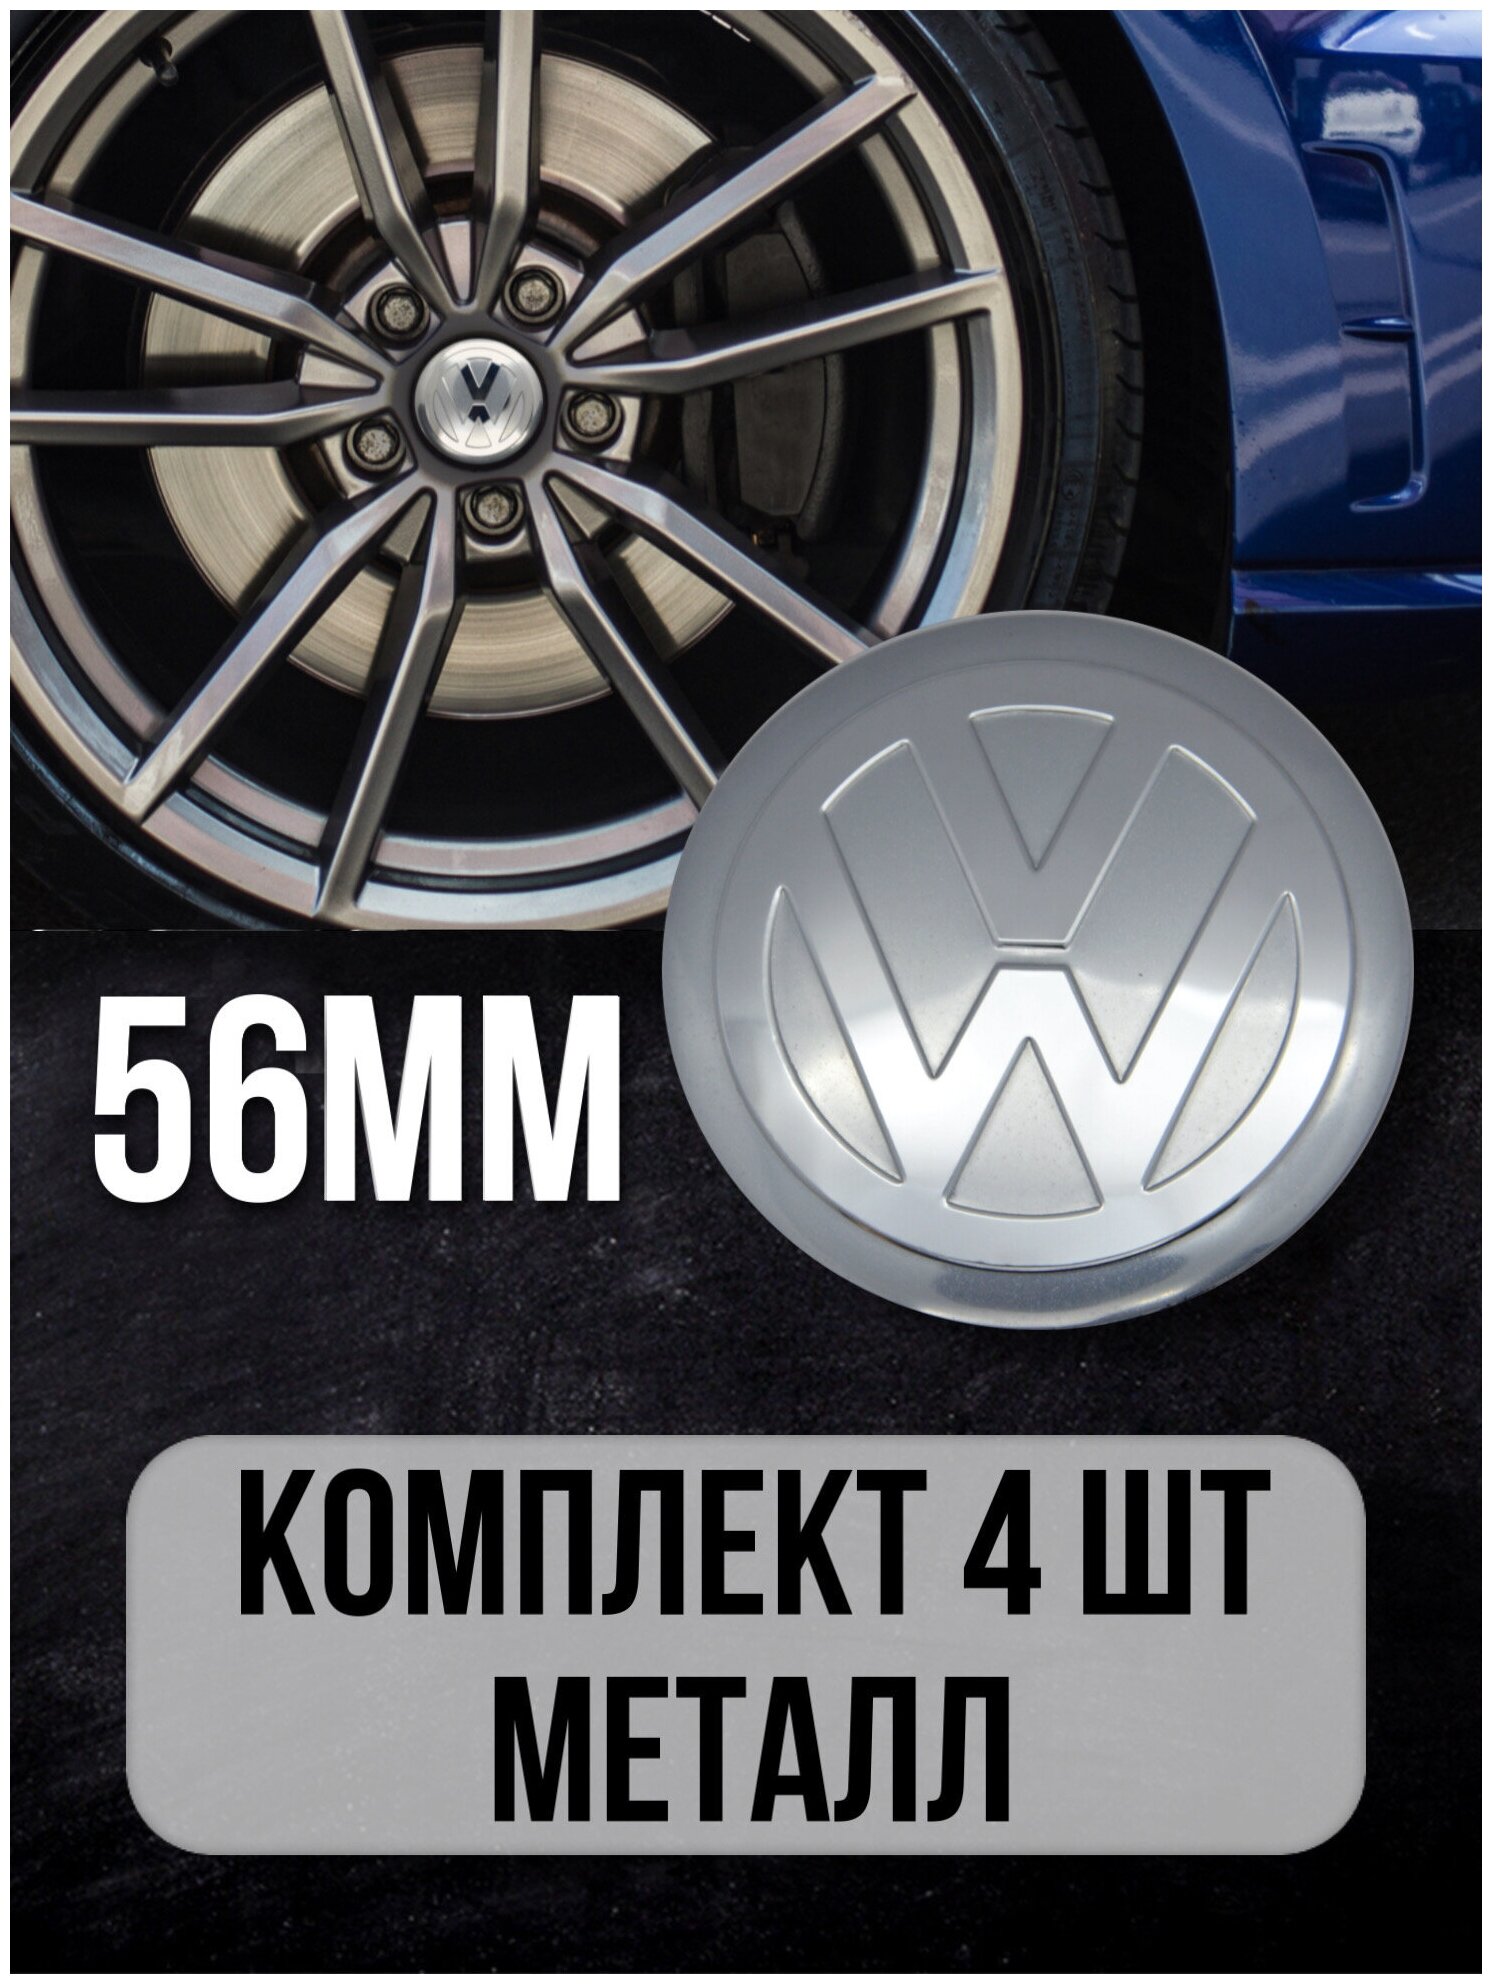 Наклейки на колесные диски алюминиевые 4шт наклейка на колесо автомобиля колпак для дисков стикиры с эмблемой Volkswagen D-56mm